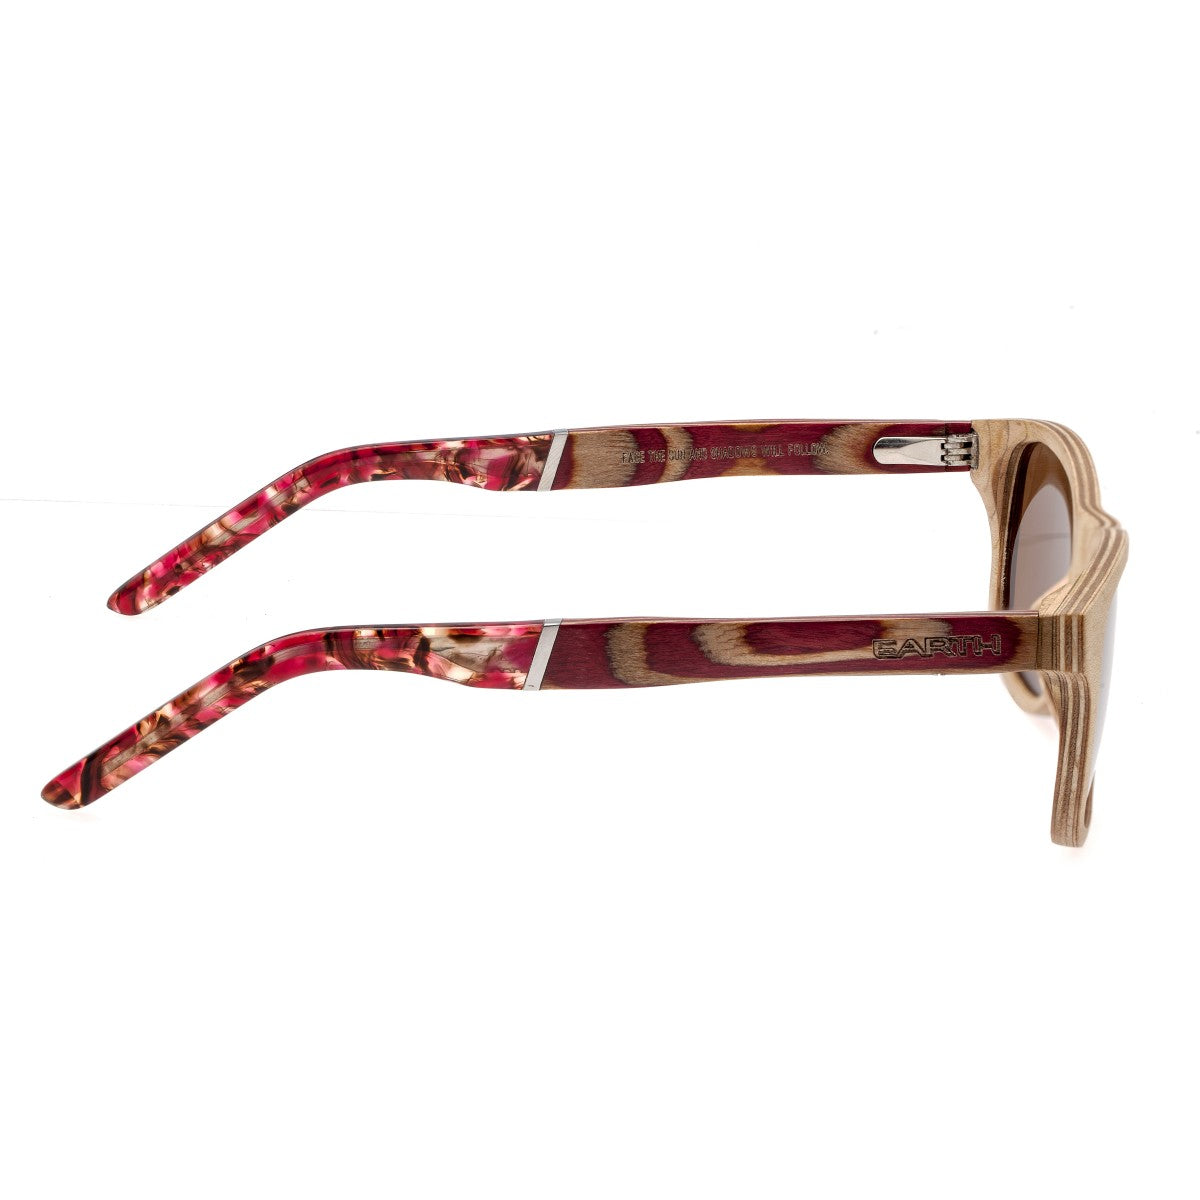 Earth Wood El Nido Polarized Sunglasses - Khaki/tan/Brown - ESG070R